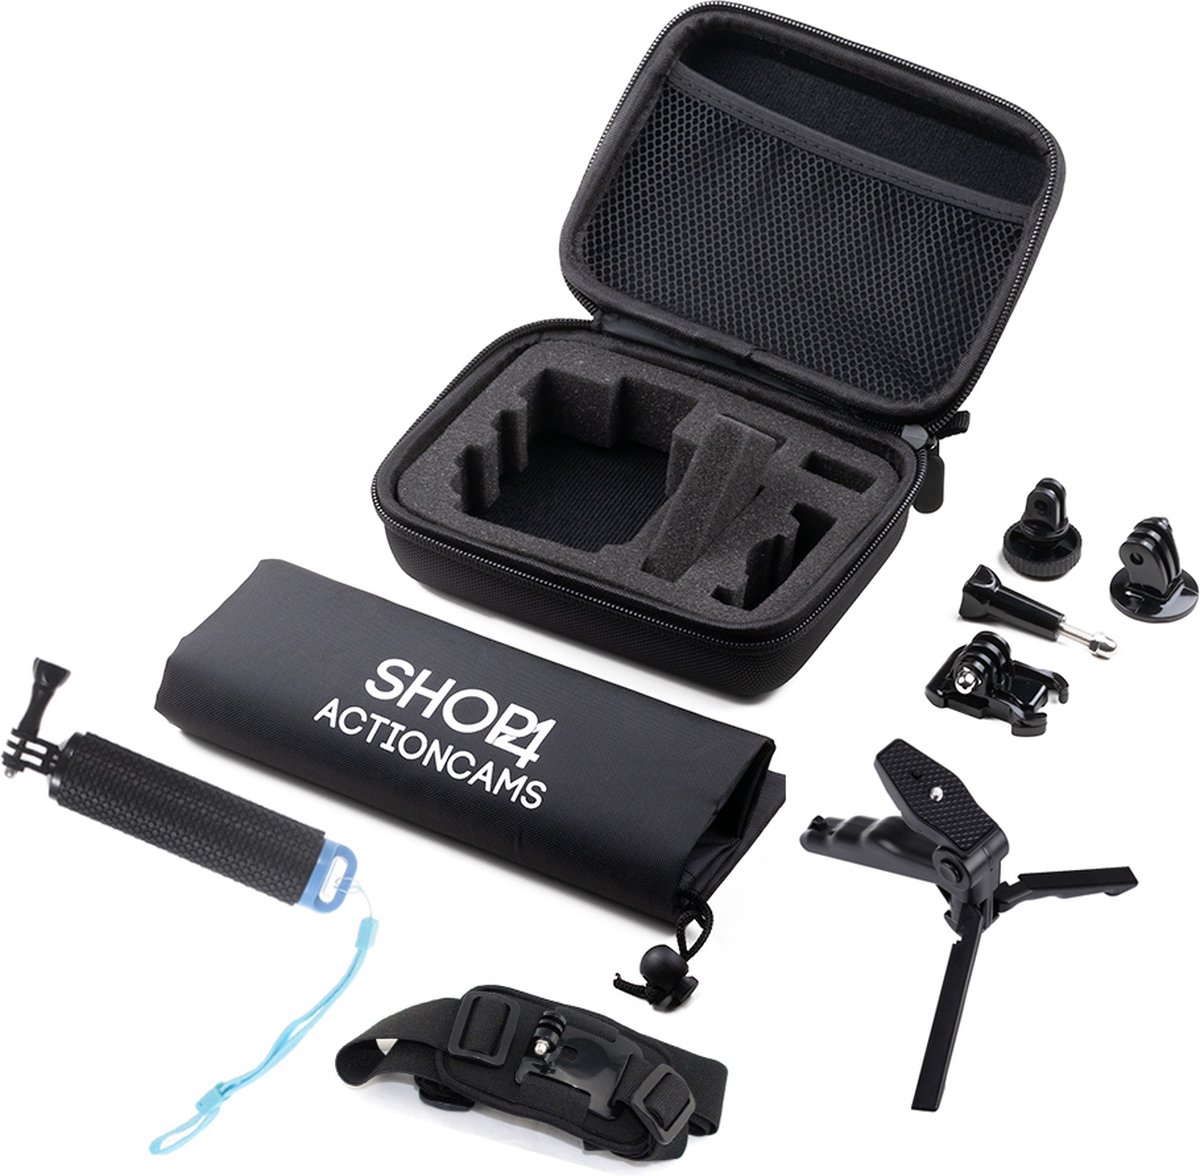 Shop4 - Actioncam Accessoires Set Middel met Opbergtas / Actioncam Accessoires Kit